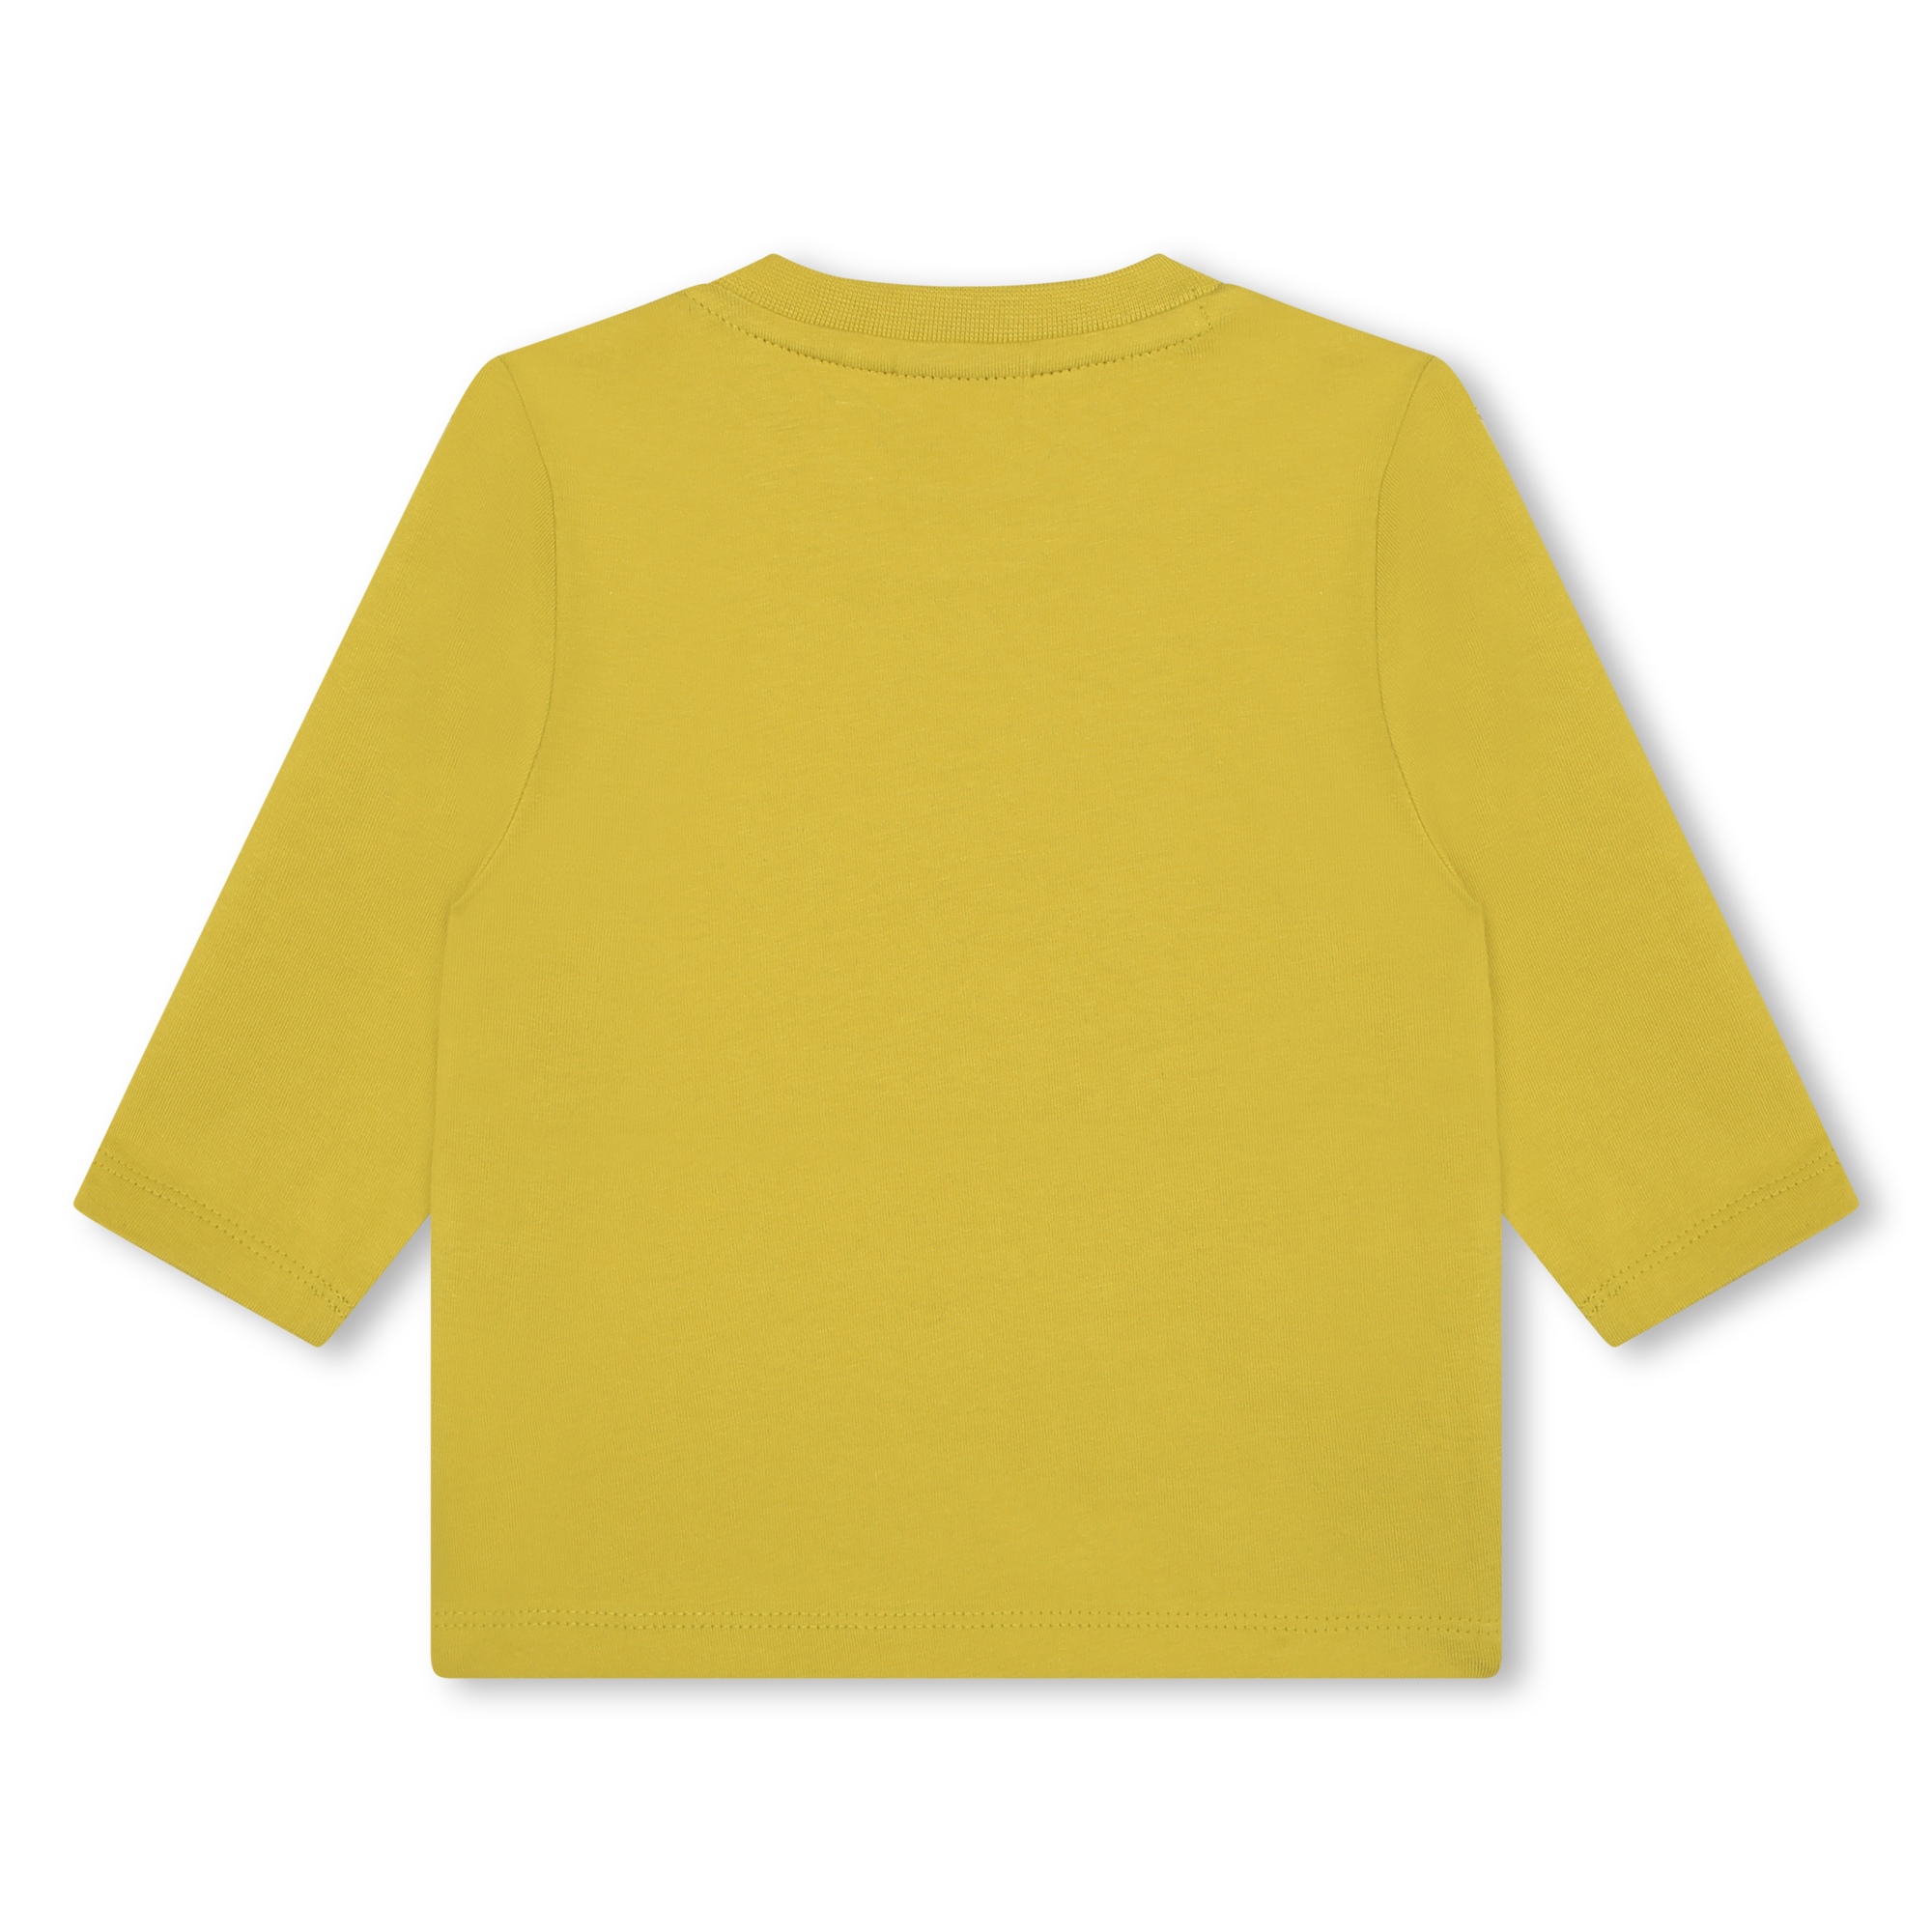 Baumwoll-t-shirt mit print BOSS Für JUNGE